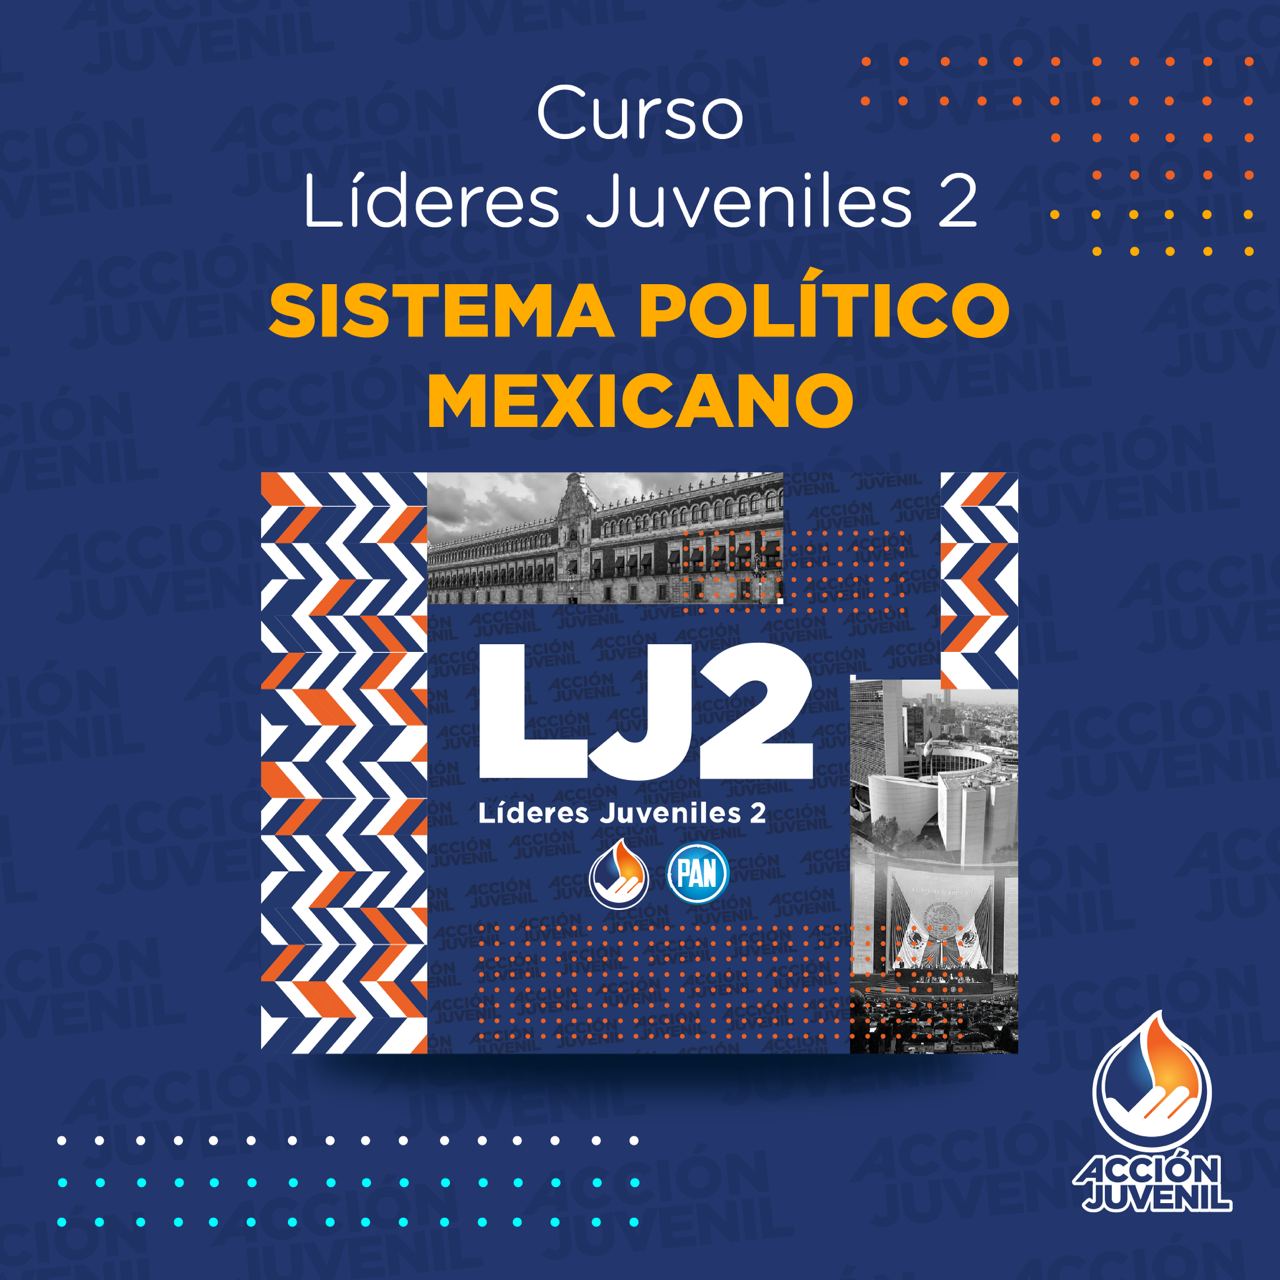 Curso Líderes Juveniles 2 Sistema Político Mexicano Naucalpan, MEX 02/04/22